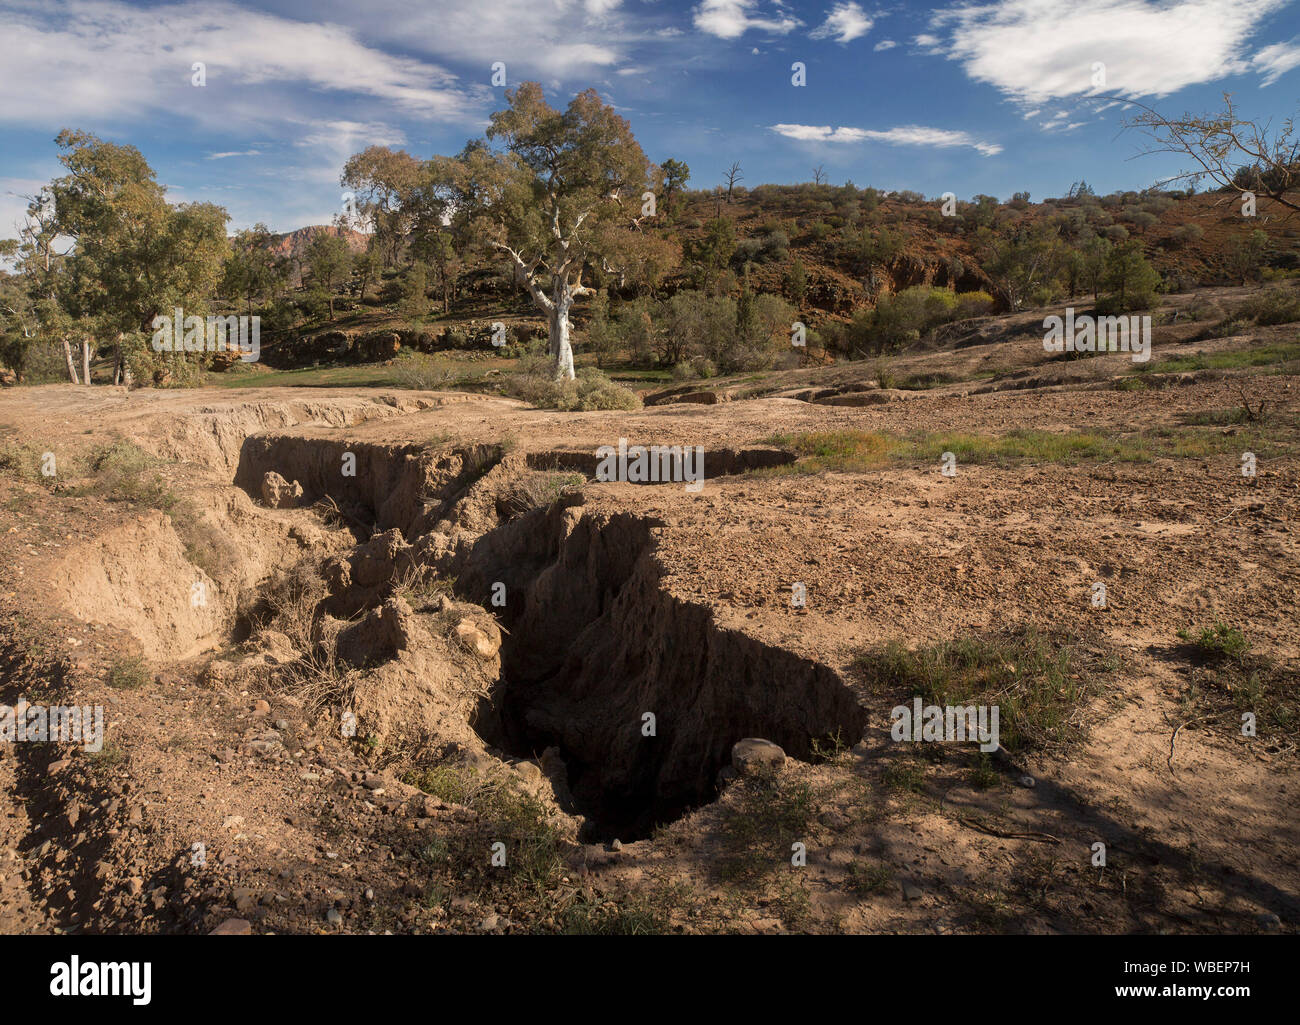 Paesaggio con profonda e fessure aperte attraverso la terra ai piedi delle colline basse a causa di erosione da acqua, Flinders Ranges National Park in Australia Foto Stock